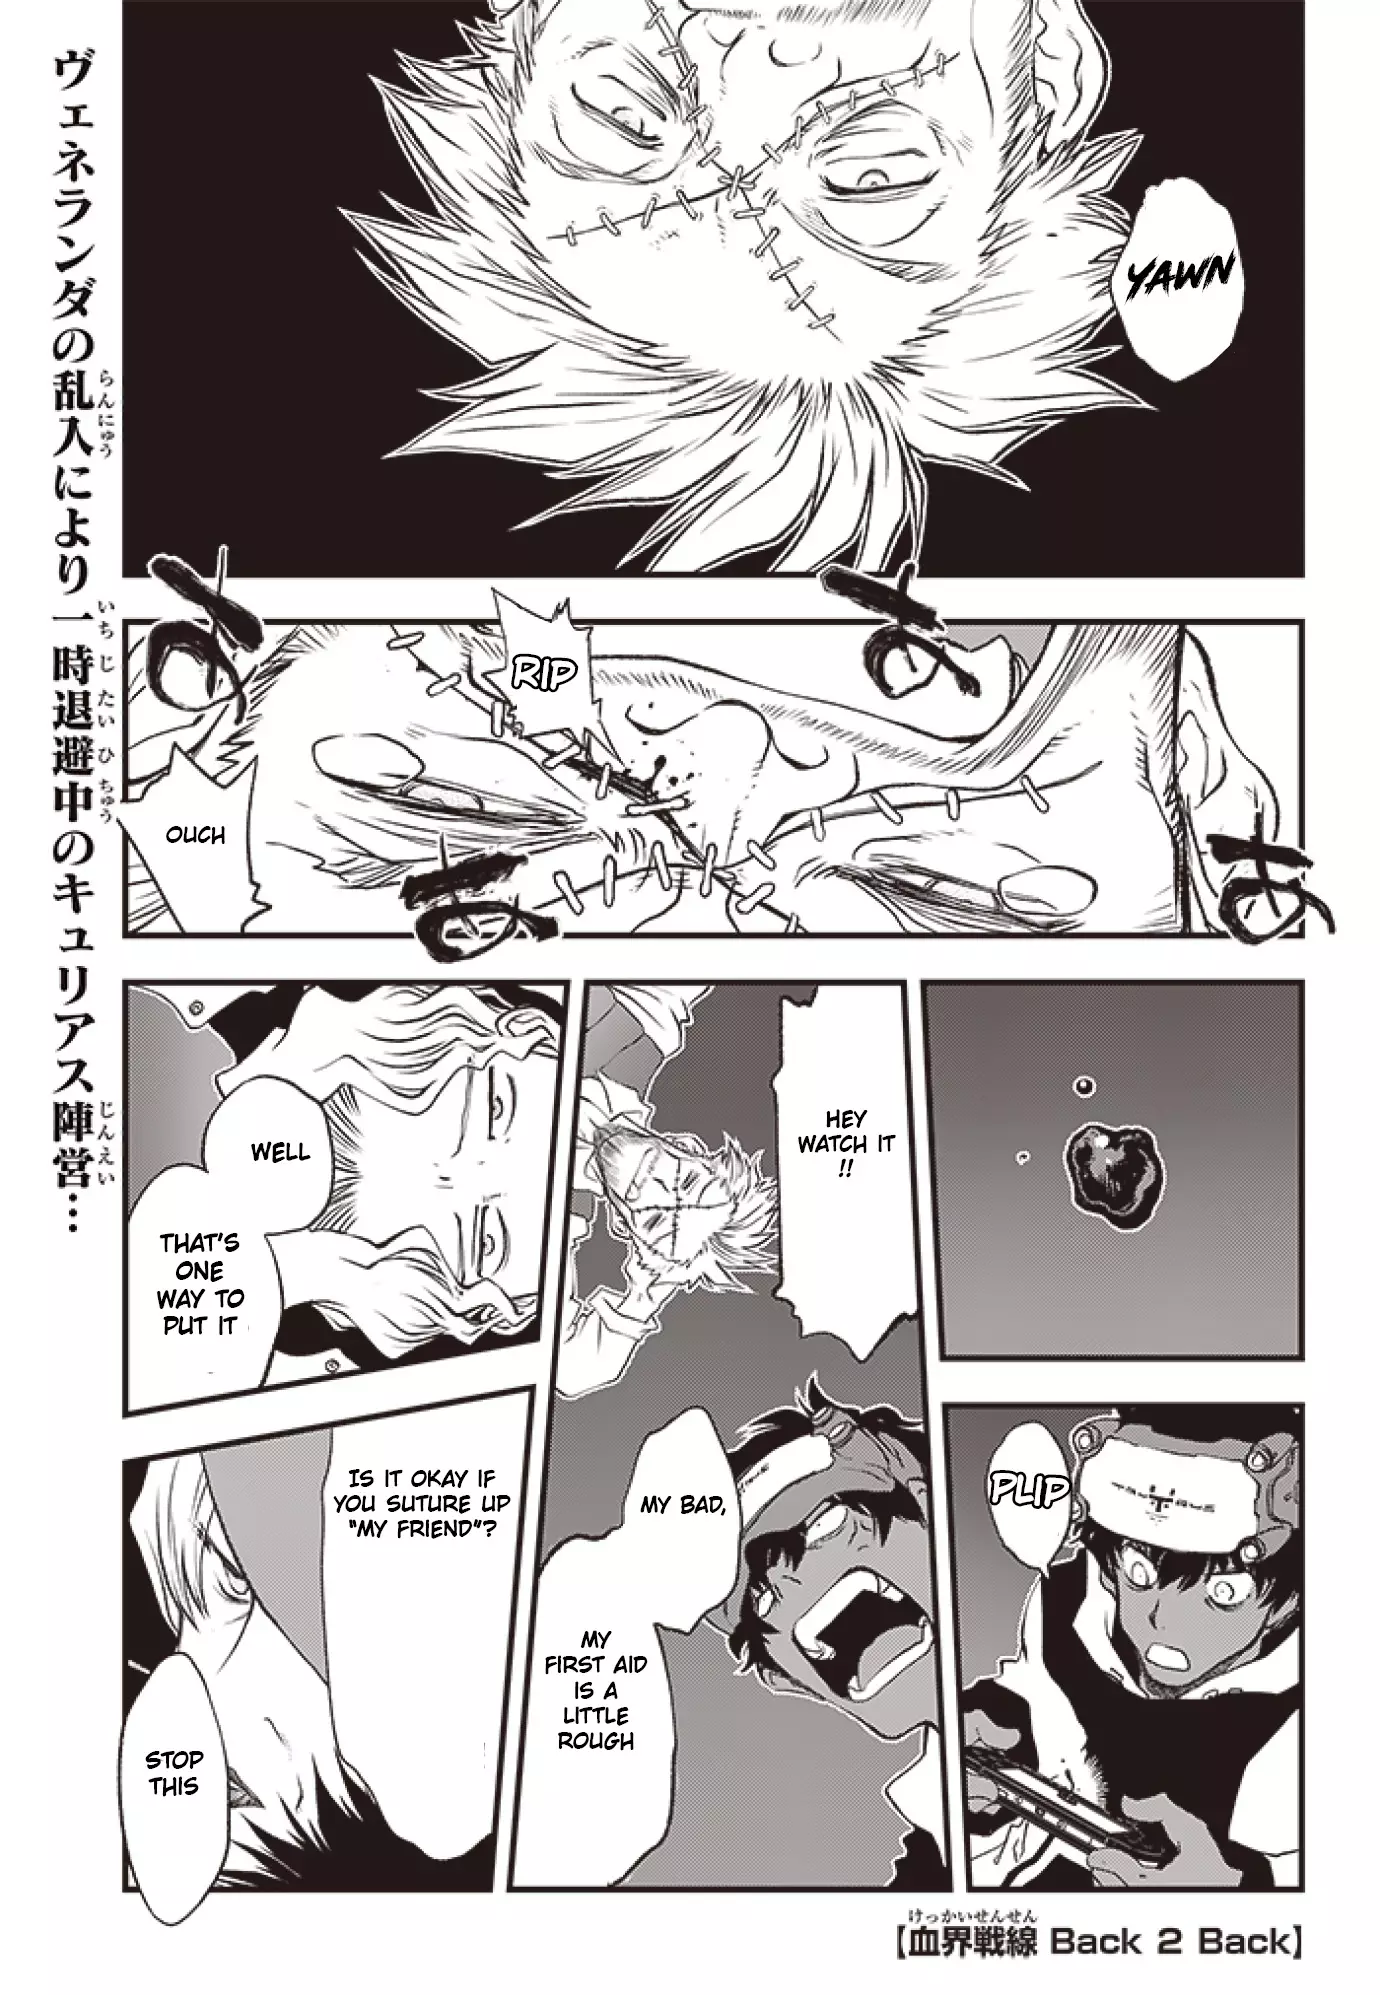 Kekkai Sensen - Back 2 Back - 23 page 2